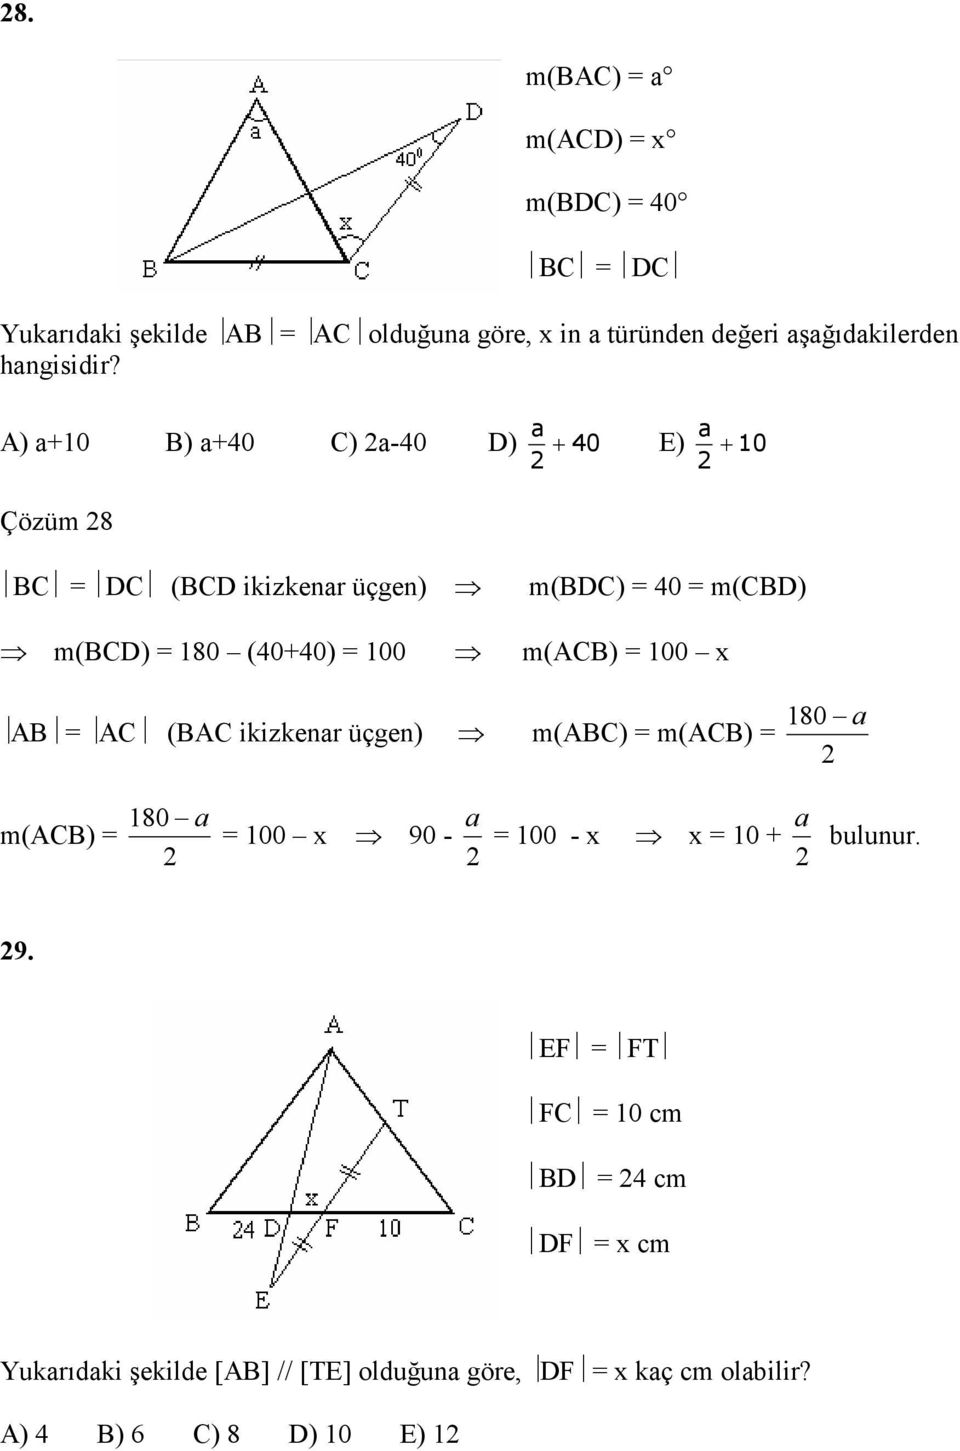 a a A) a+0 B) a+0 C) a-0 D) + 0 E) + 0 Çözüm 8 BC DC (BCD ikizkenar üçgen) m(bdc) 0 m(cbd) m(bcd) 80 (0+0) 00